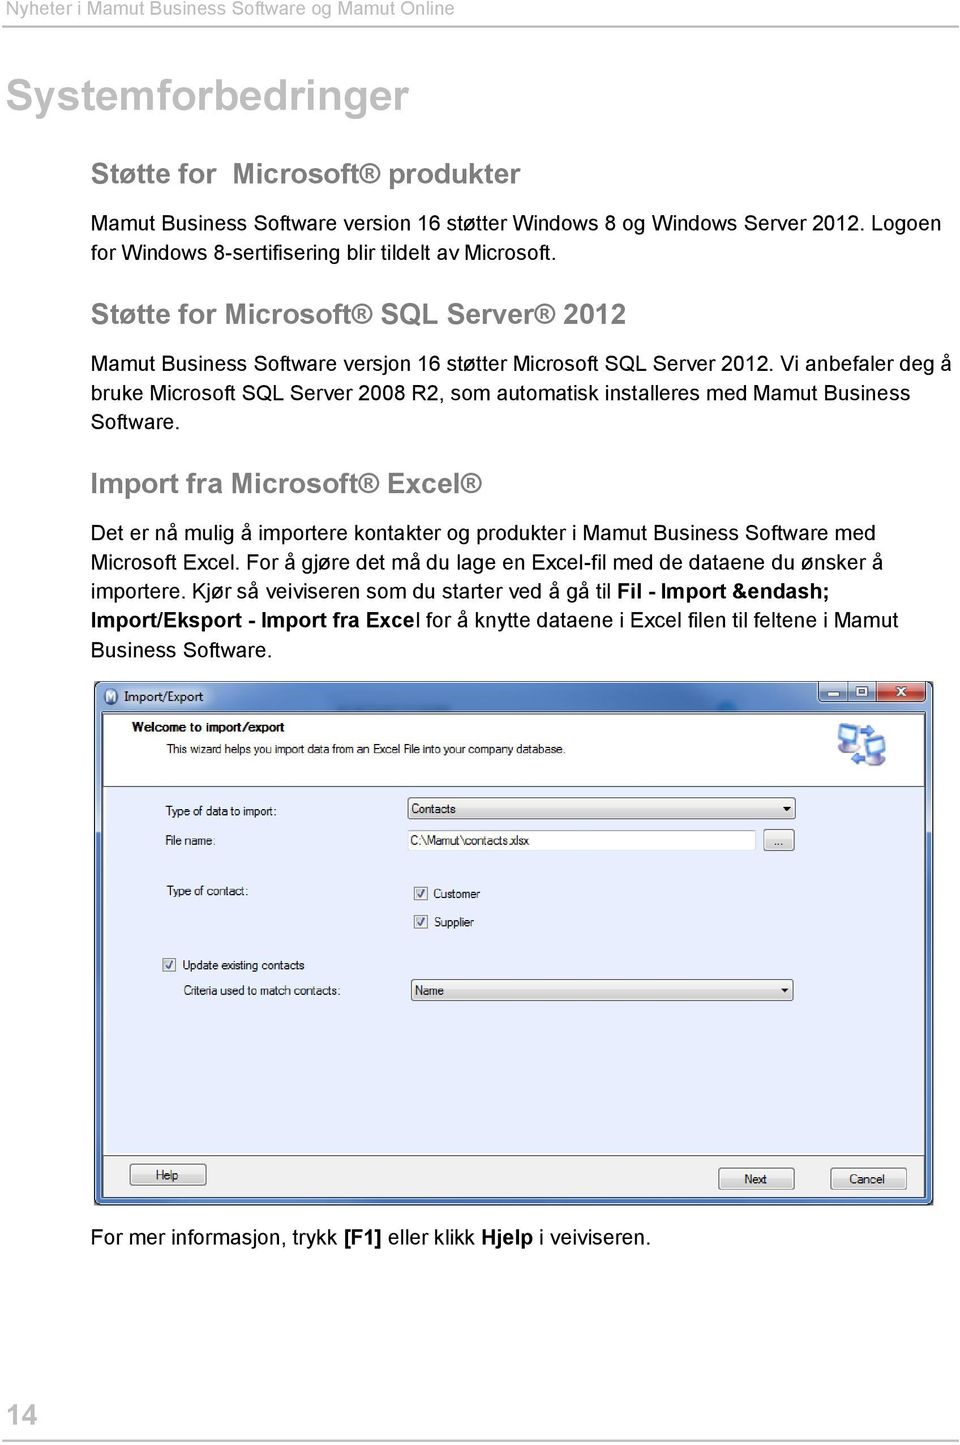 Vi anbefaler deg å bruke Microsoft SQL Server 2008 R2, som automatisk installeres med Mamut Business Software.